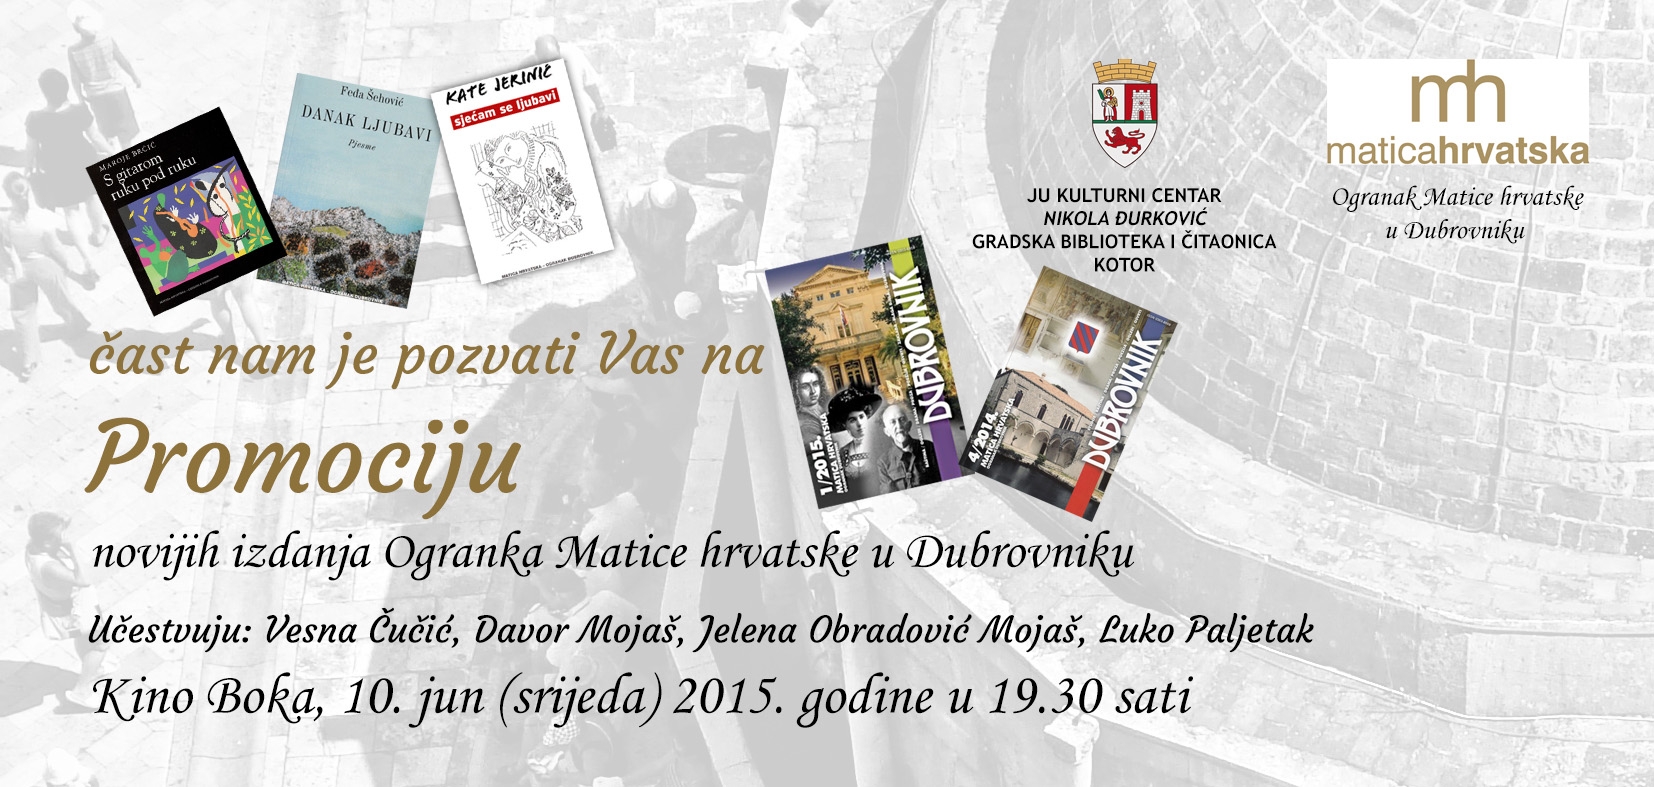 Promocija novijih izdanja Ogranka Matice hrvatske